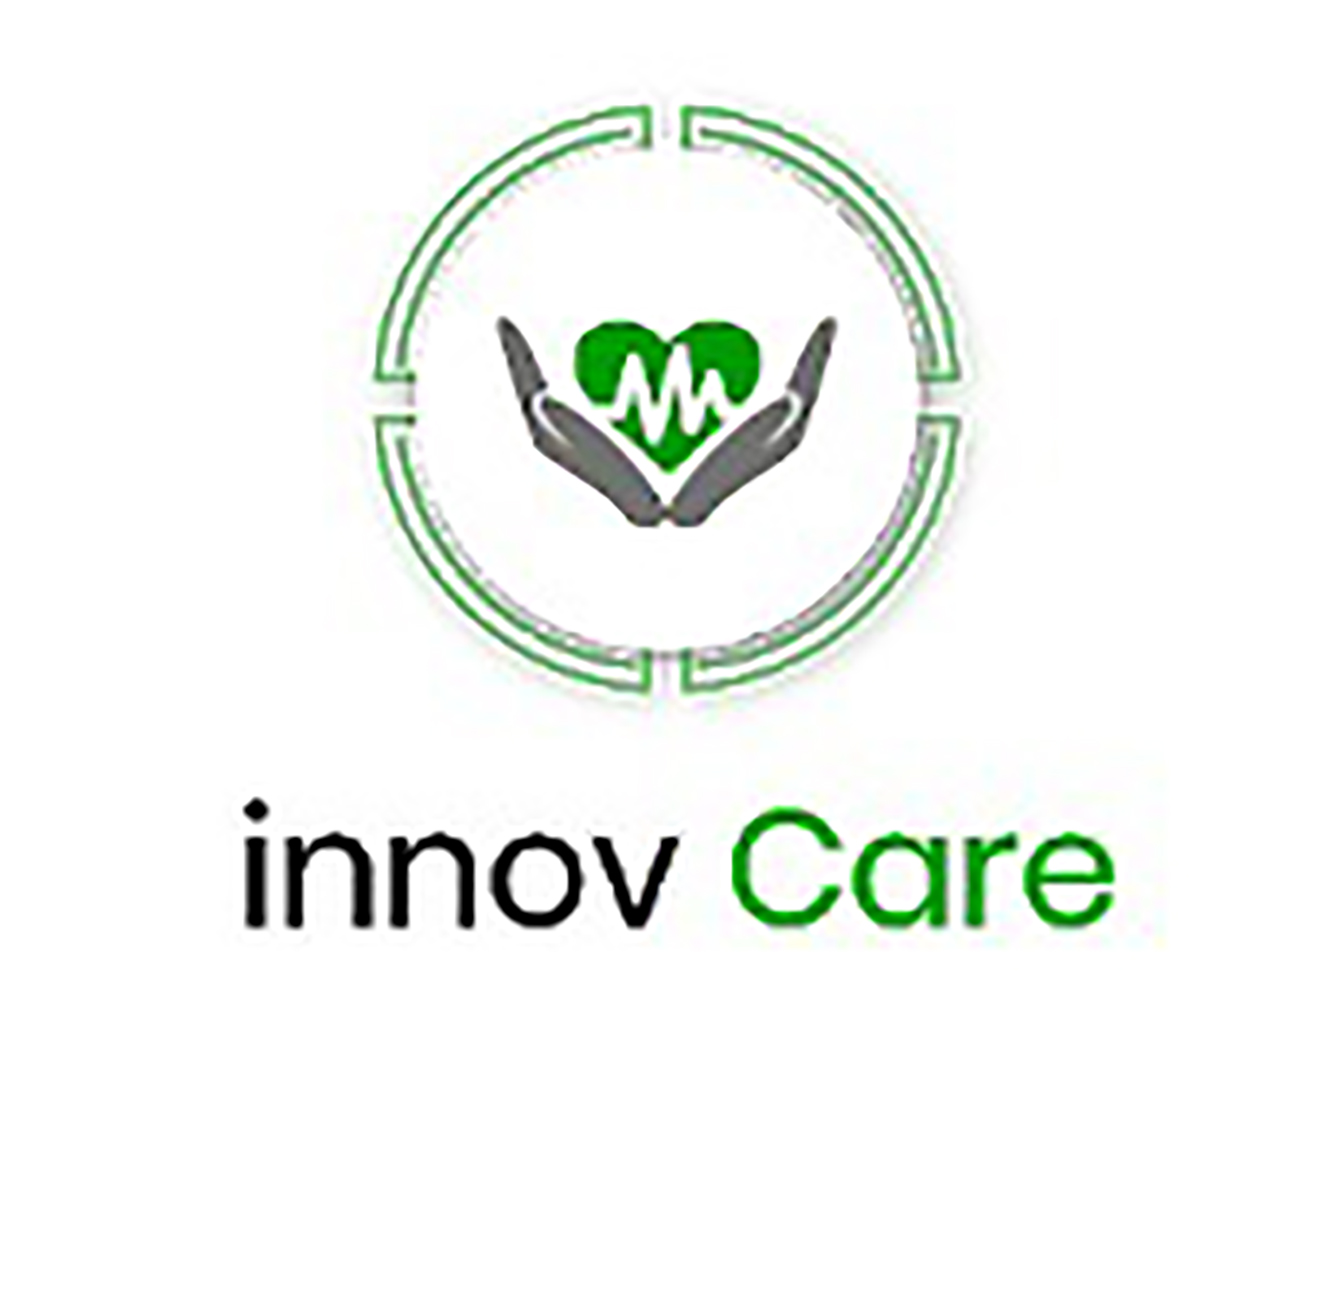 Innov Care, l’application qui vous rapproche des services de santé 